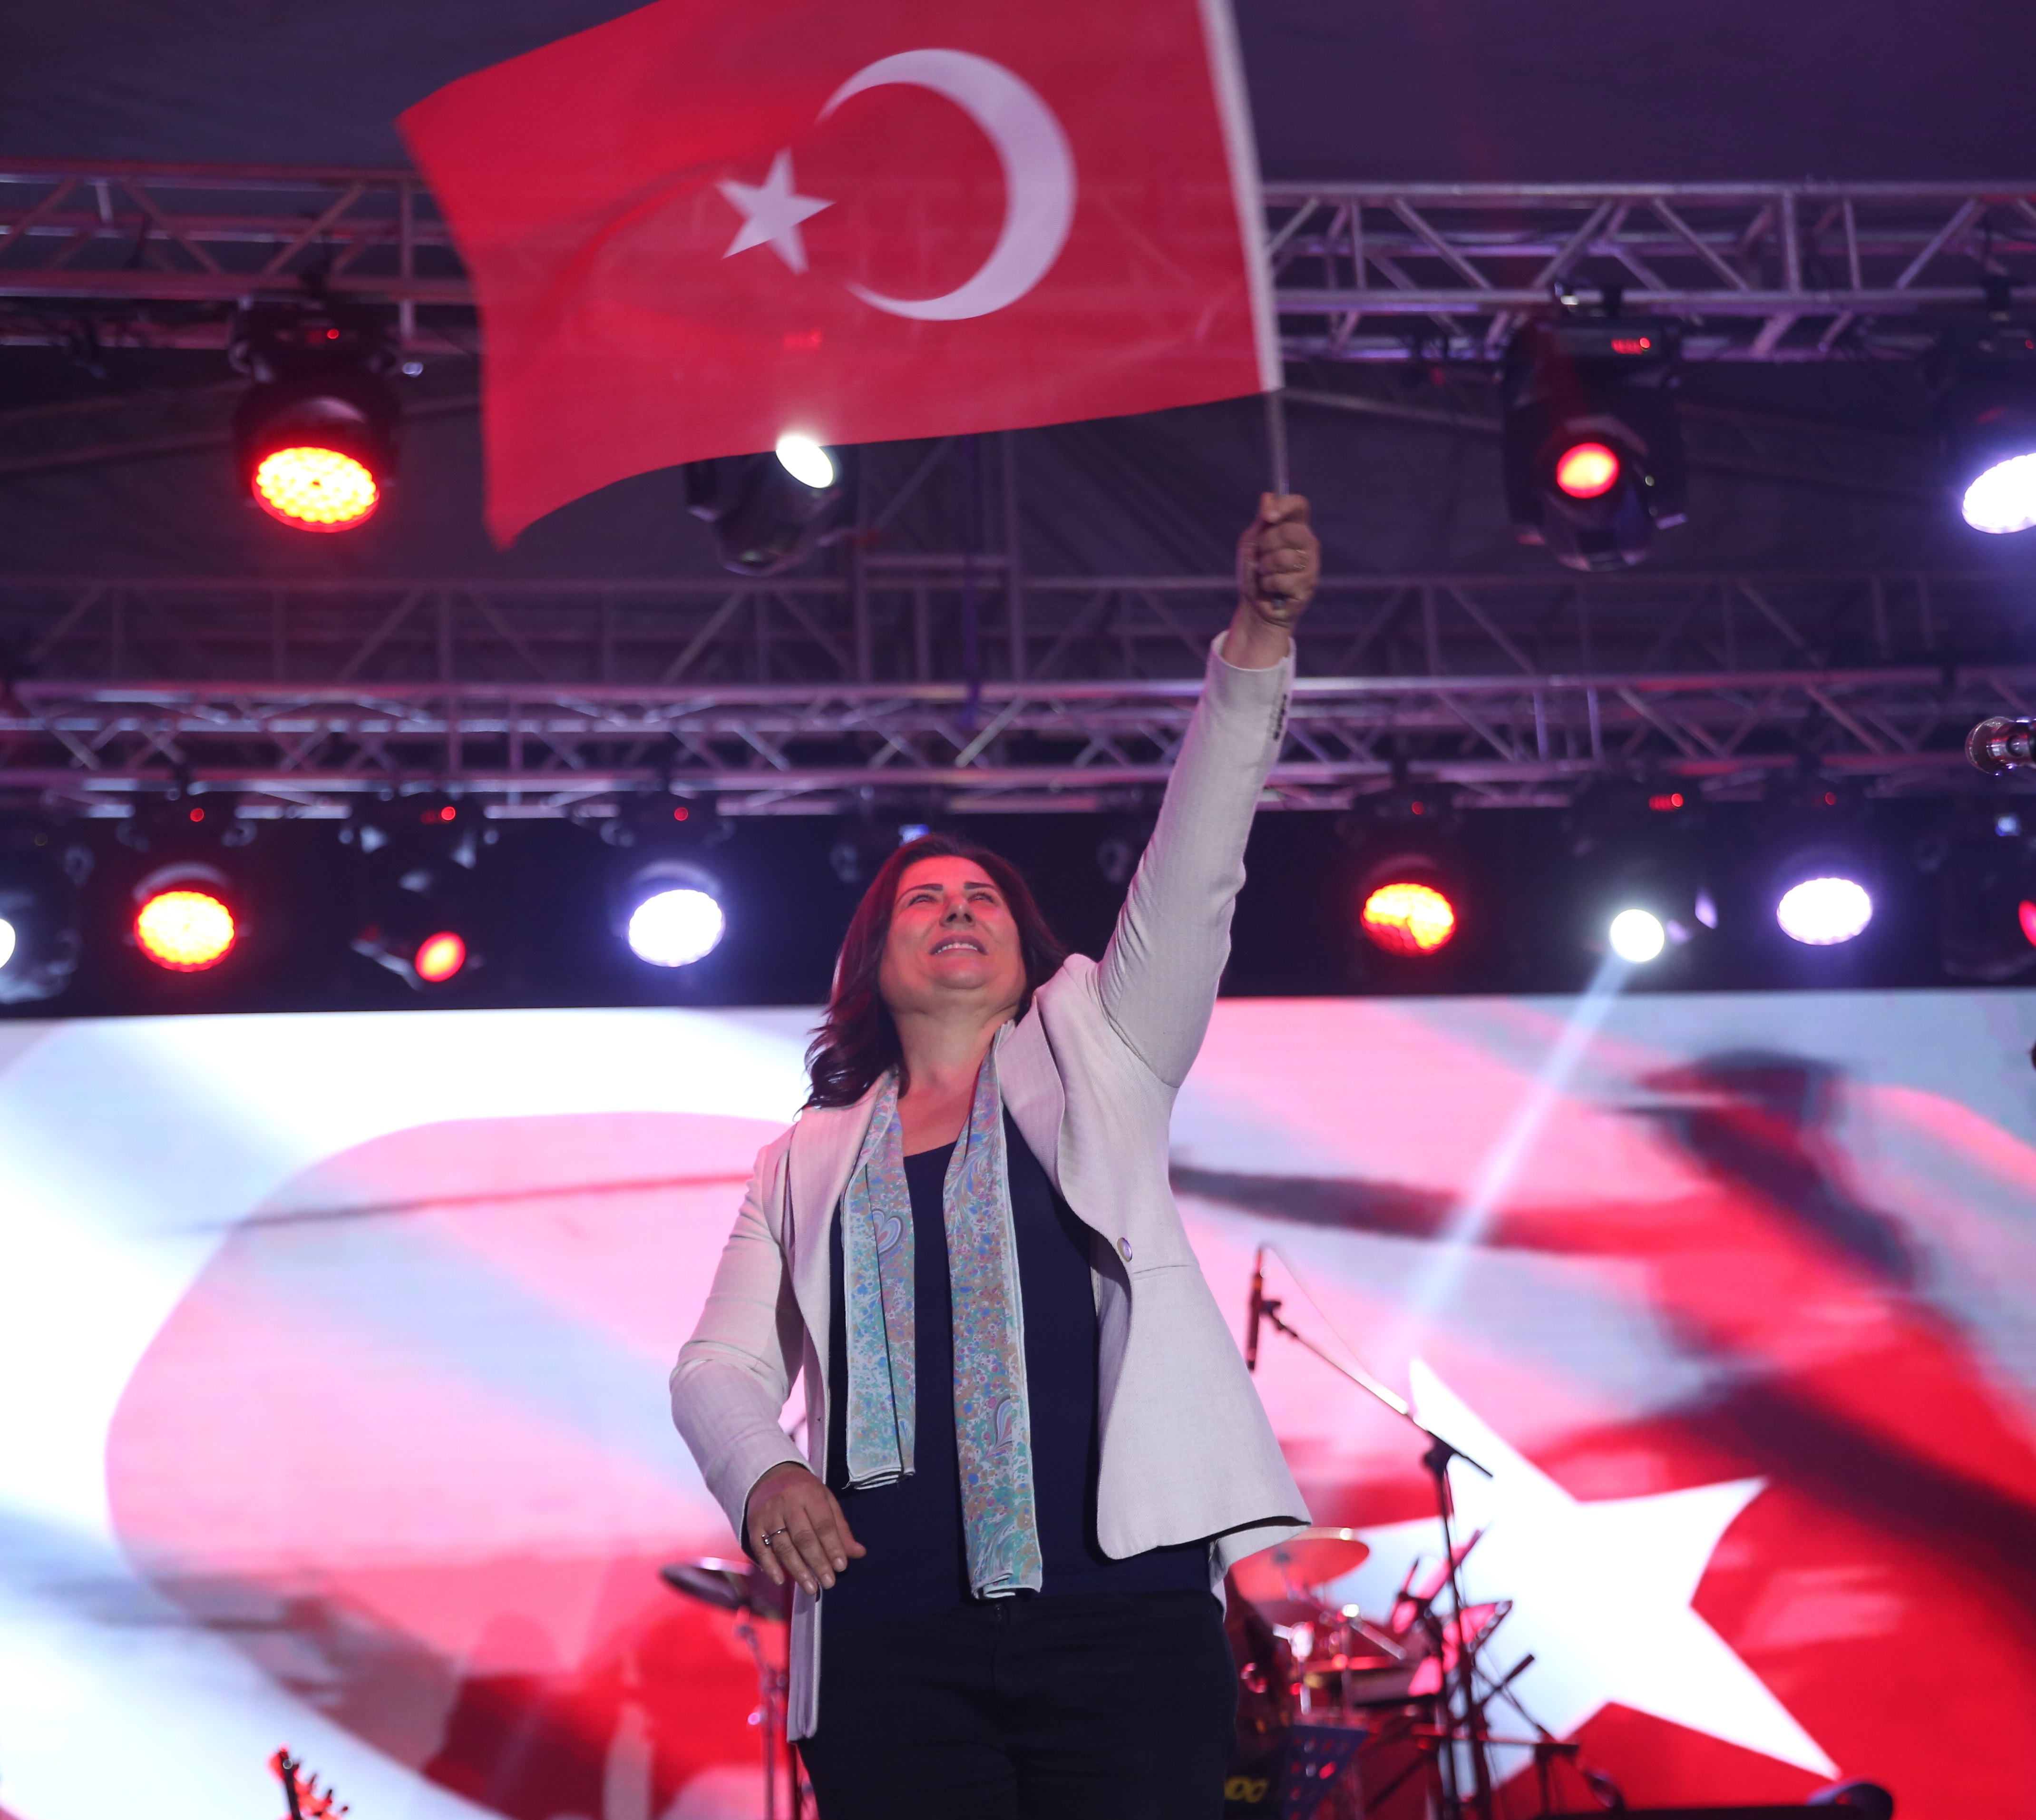 Aydın Büyükşehir Belediyesi 19 Mayıs Atatürk'ü Anma Gençlik ve Spor Bayramı'nı gençlik konserleriyle kutluyor.